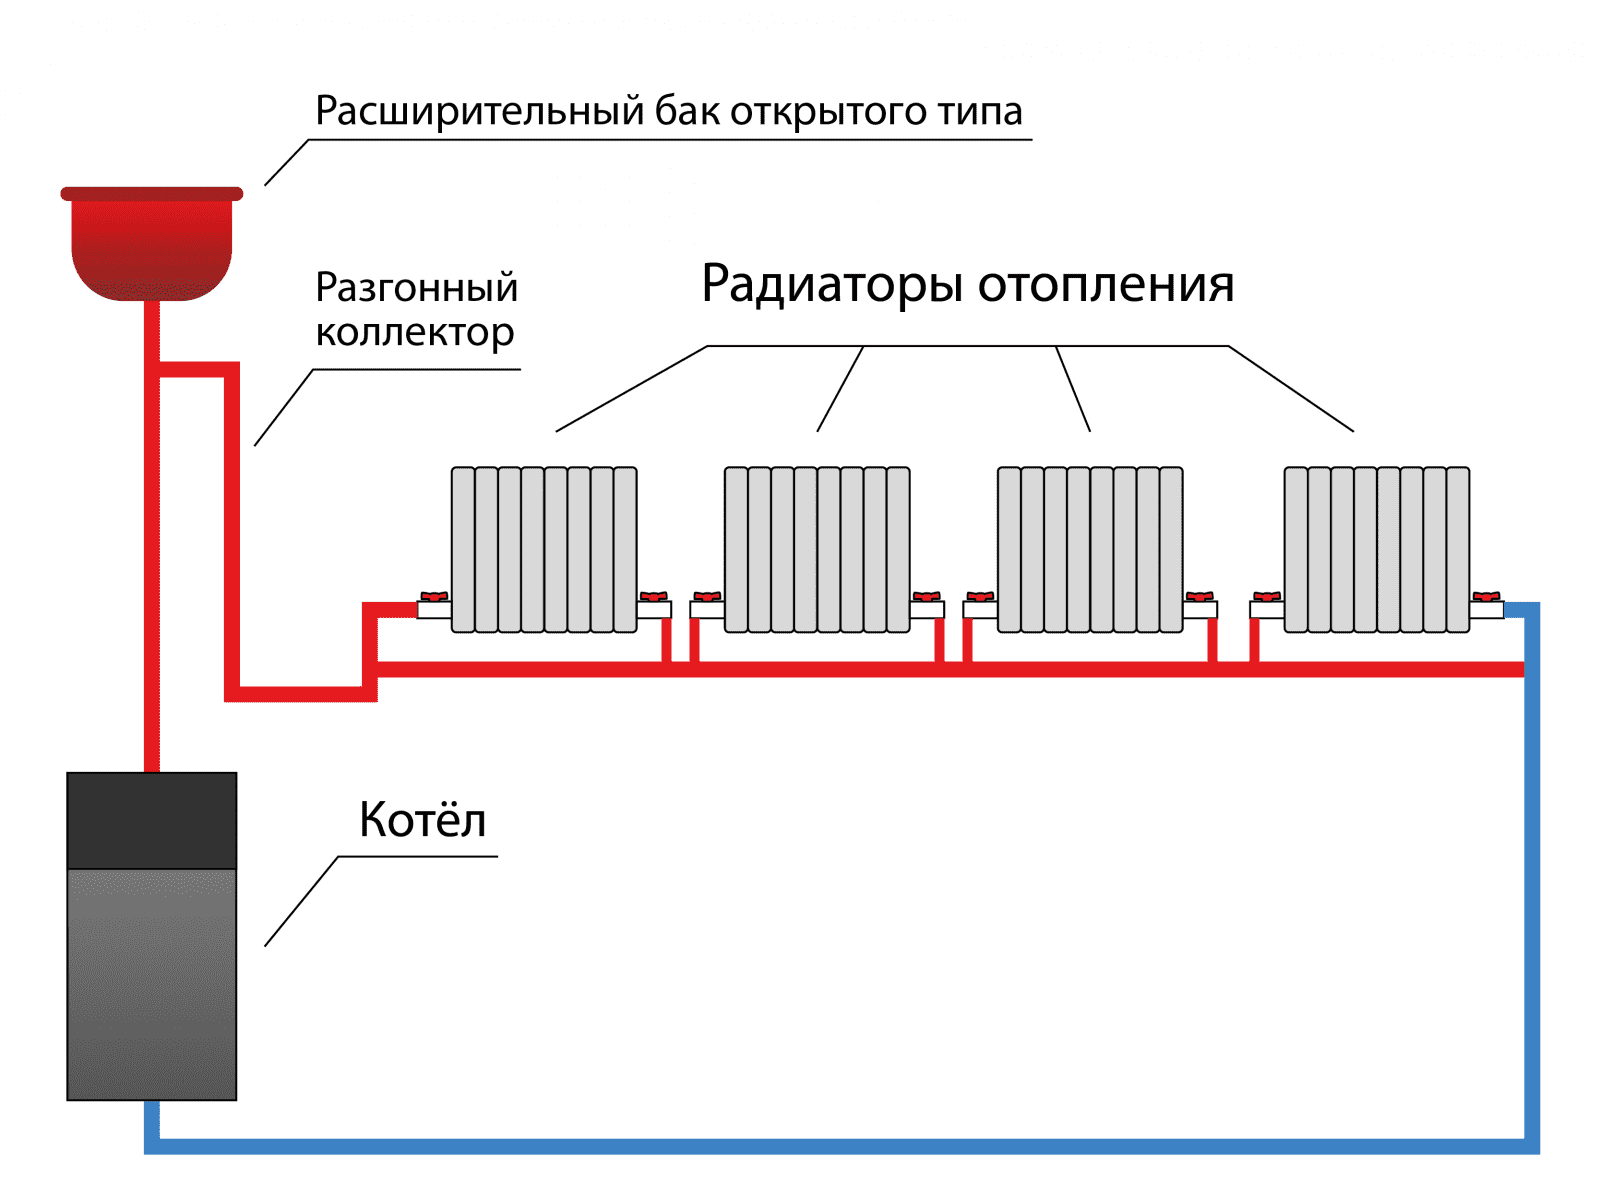 Однотрубная система отопления частного дома с нижней разводкой и схема